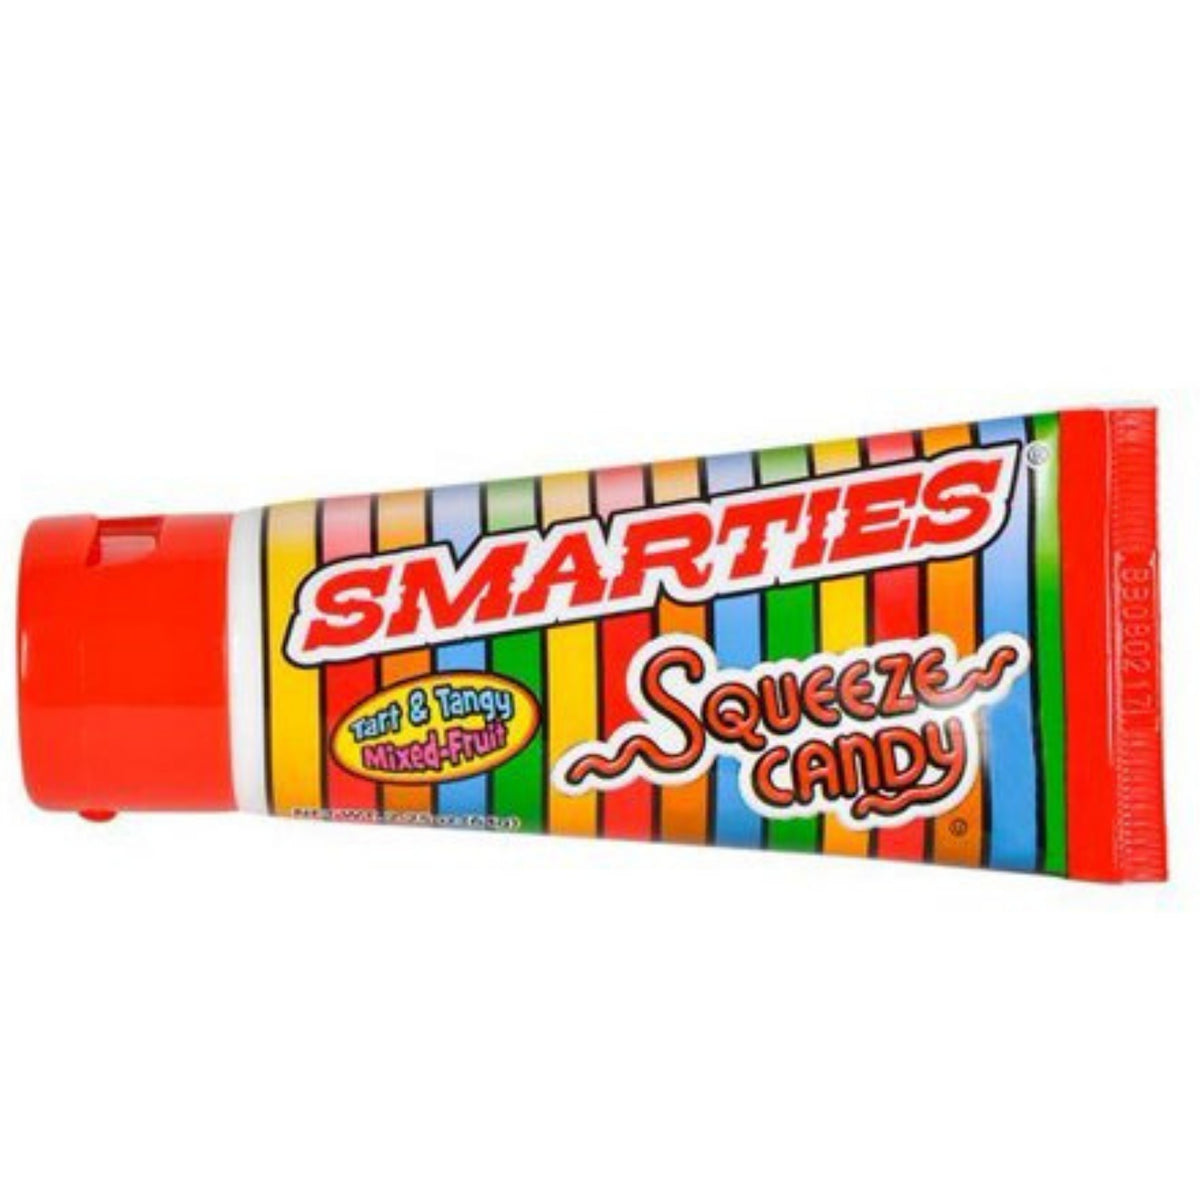 Smarties Squeeze Candy 2.25oz, Smarties, smarties candy, smarties squeeze candy